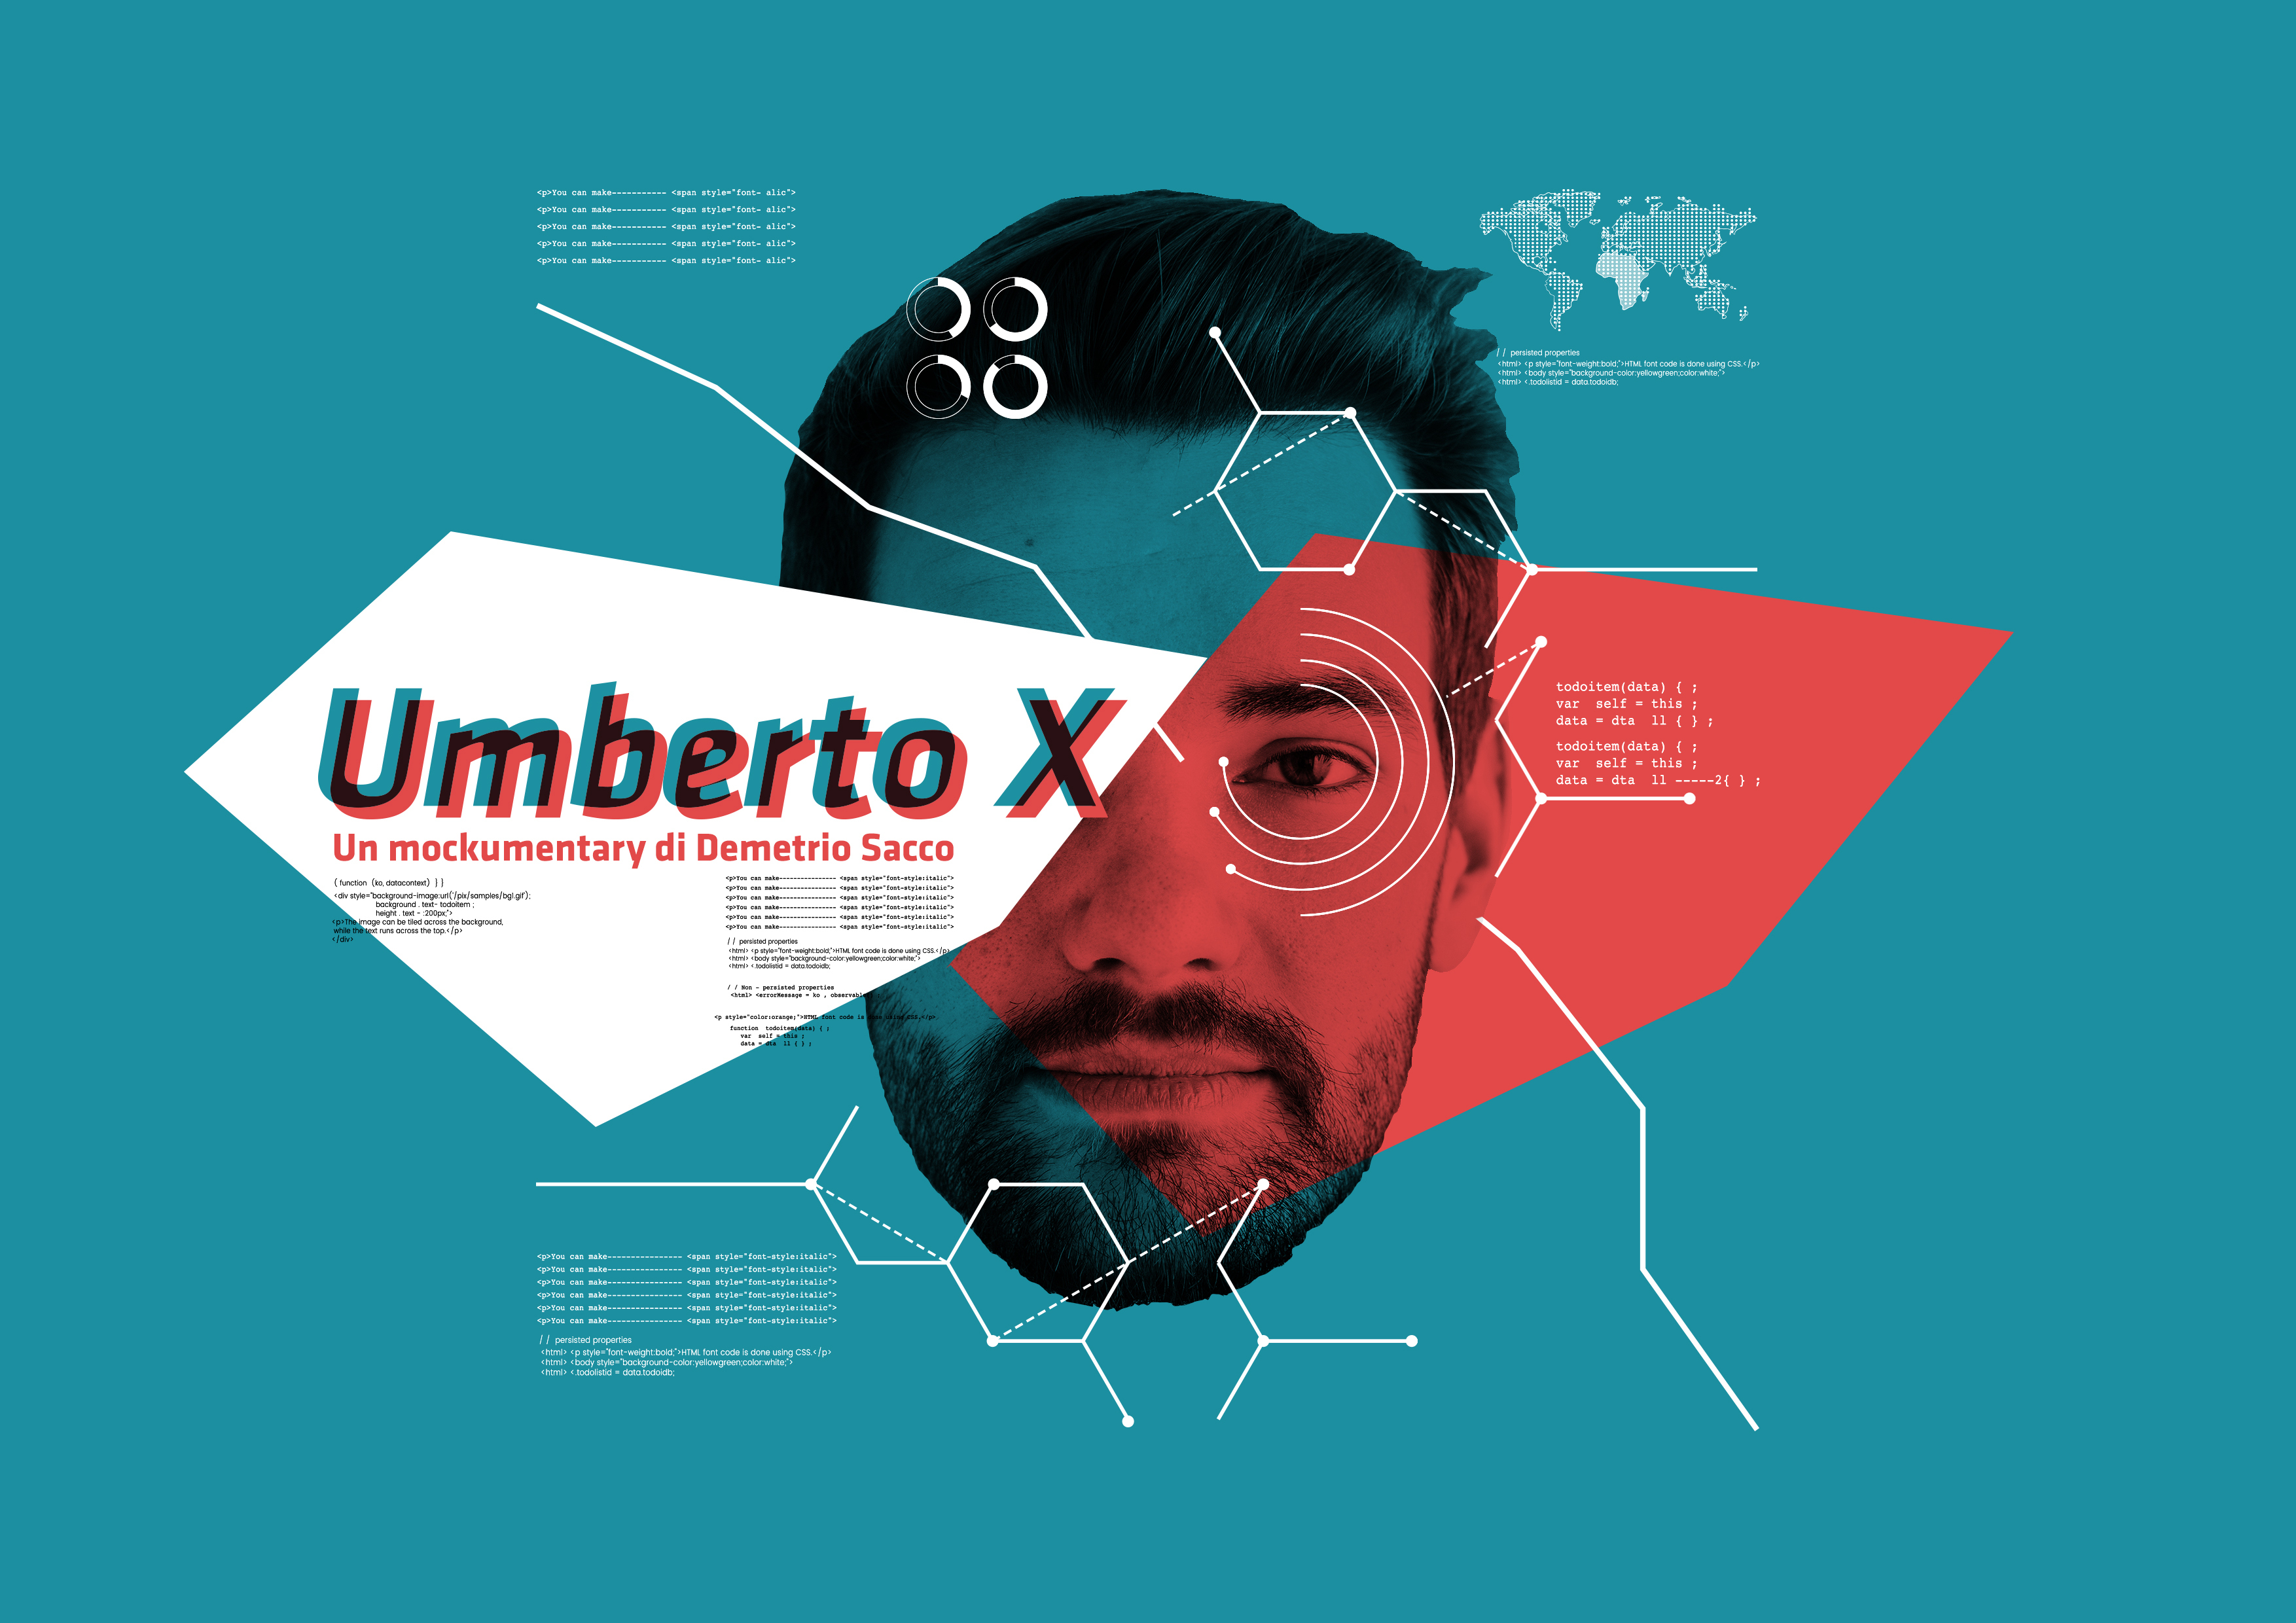 Umberto X